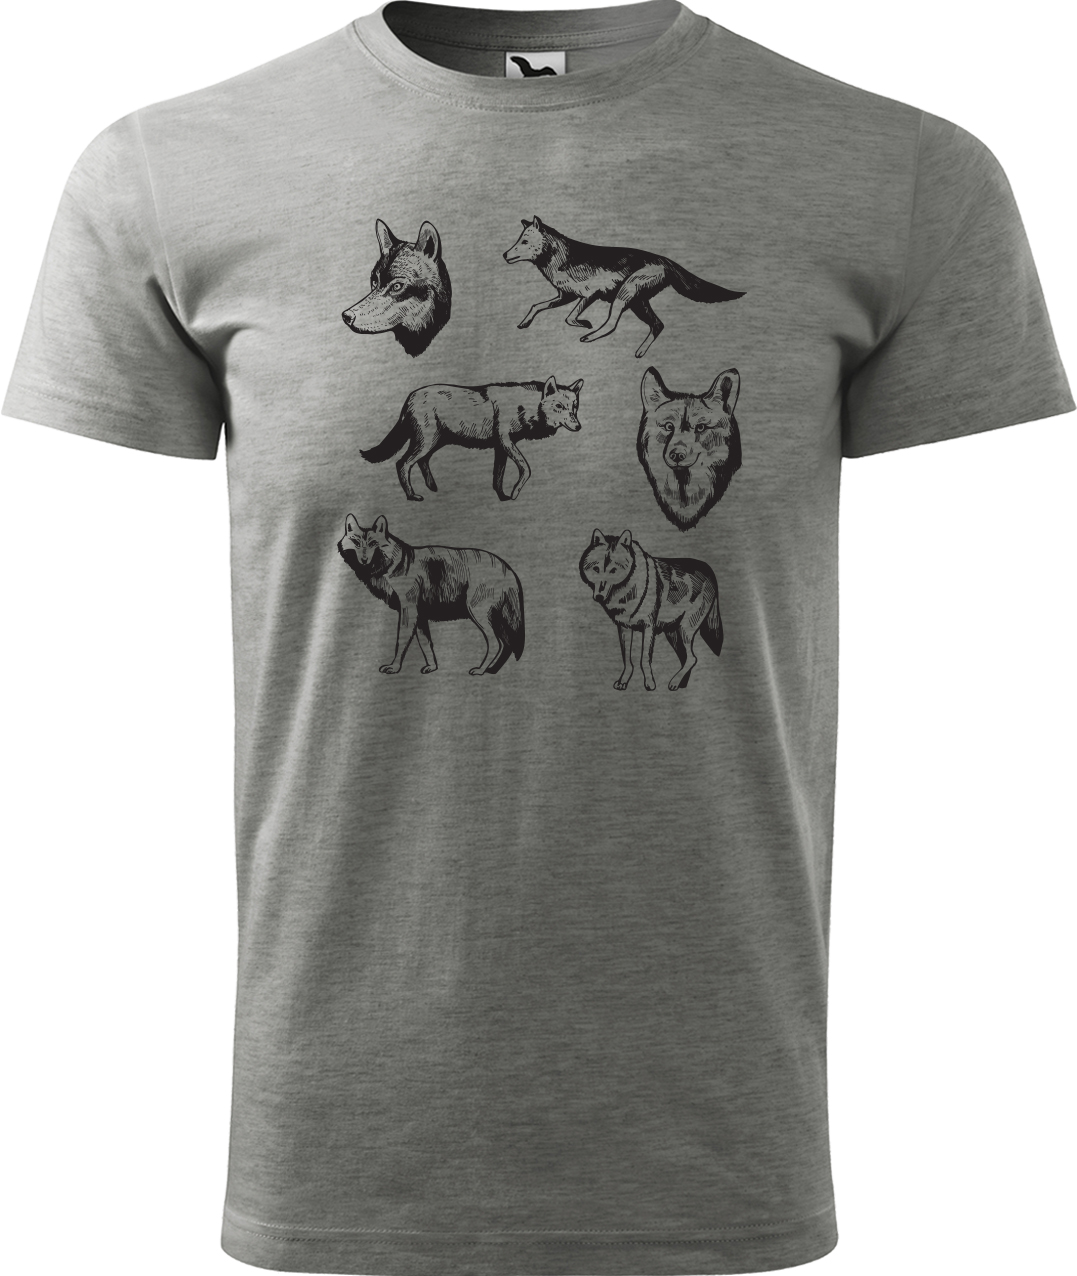 Pánské tričko s vlkem - Vlci Velikost: L, Barva: Tmavě šedý melír (12), Střih: pánský